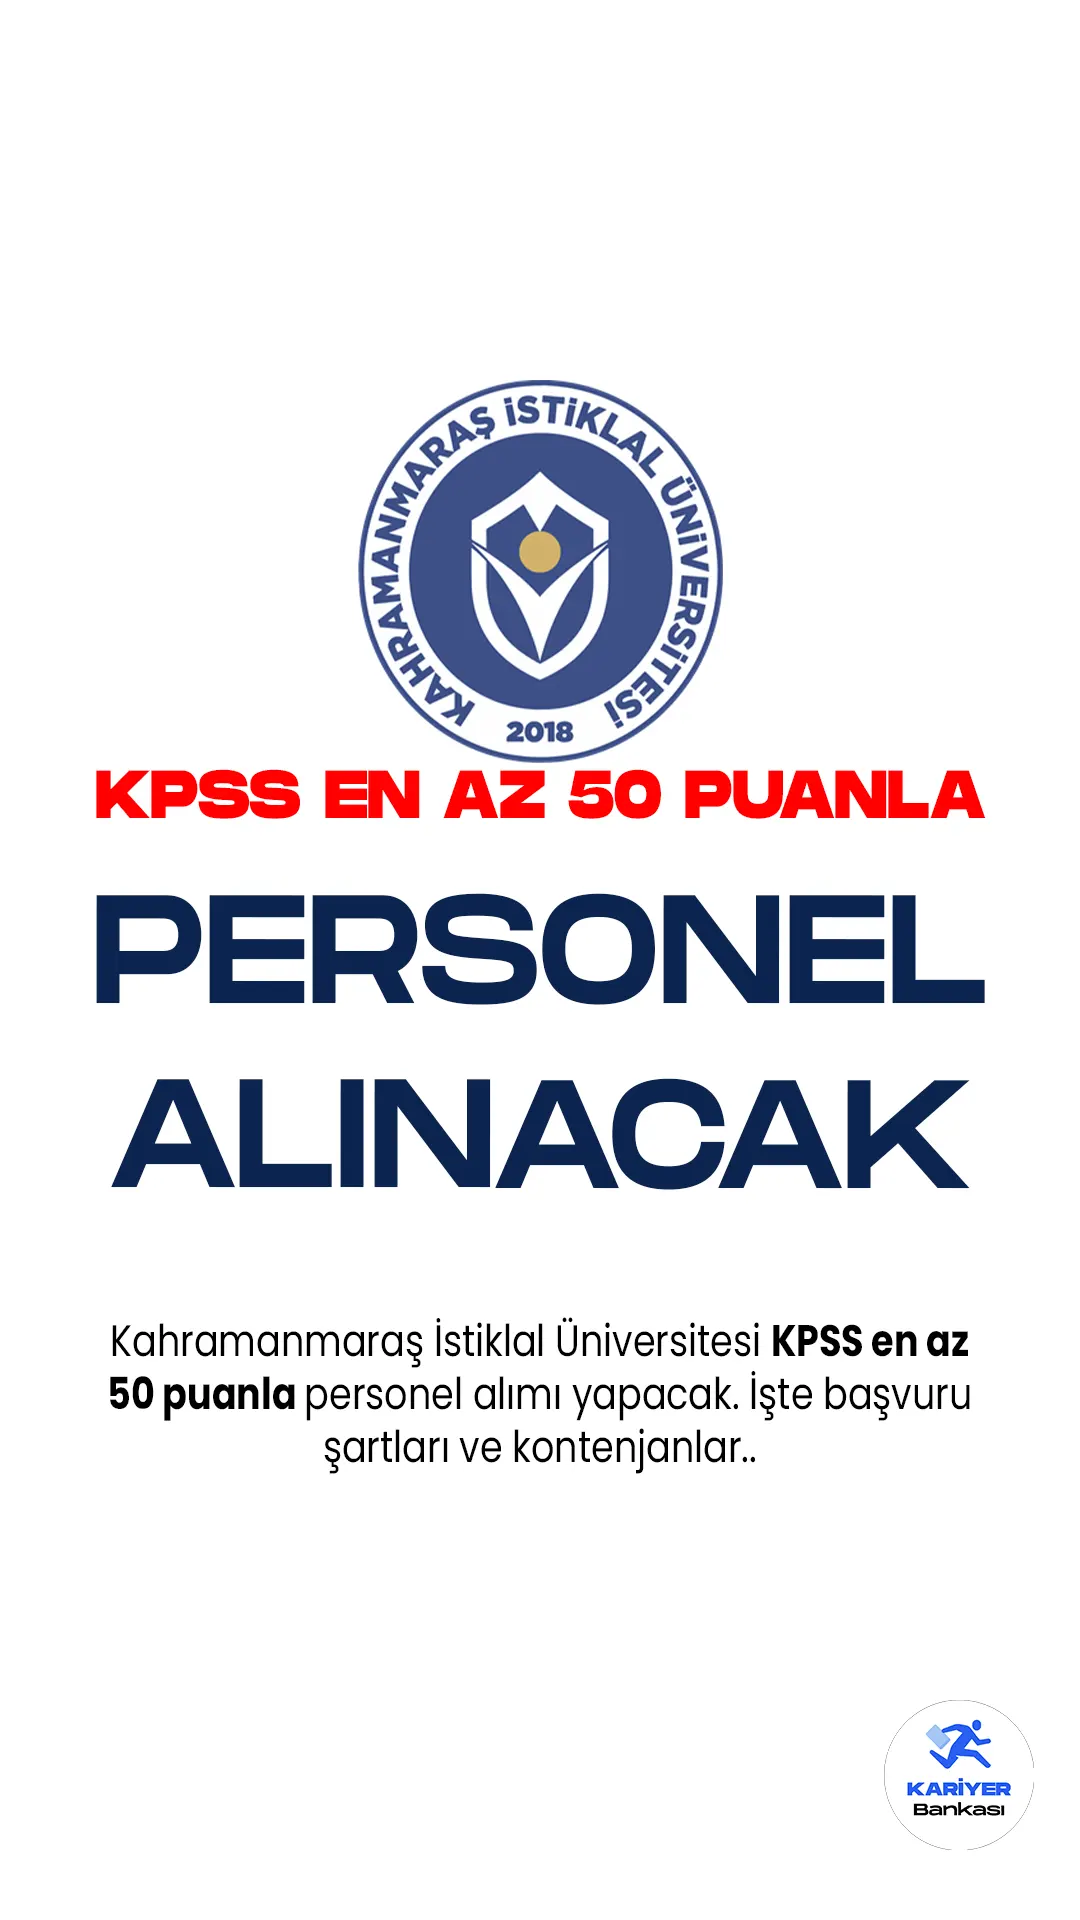 Kahramanmaraş İstiklal Üniversitesi KPSS en az 50 puanla personel alımı yapacak.